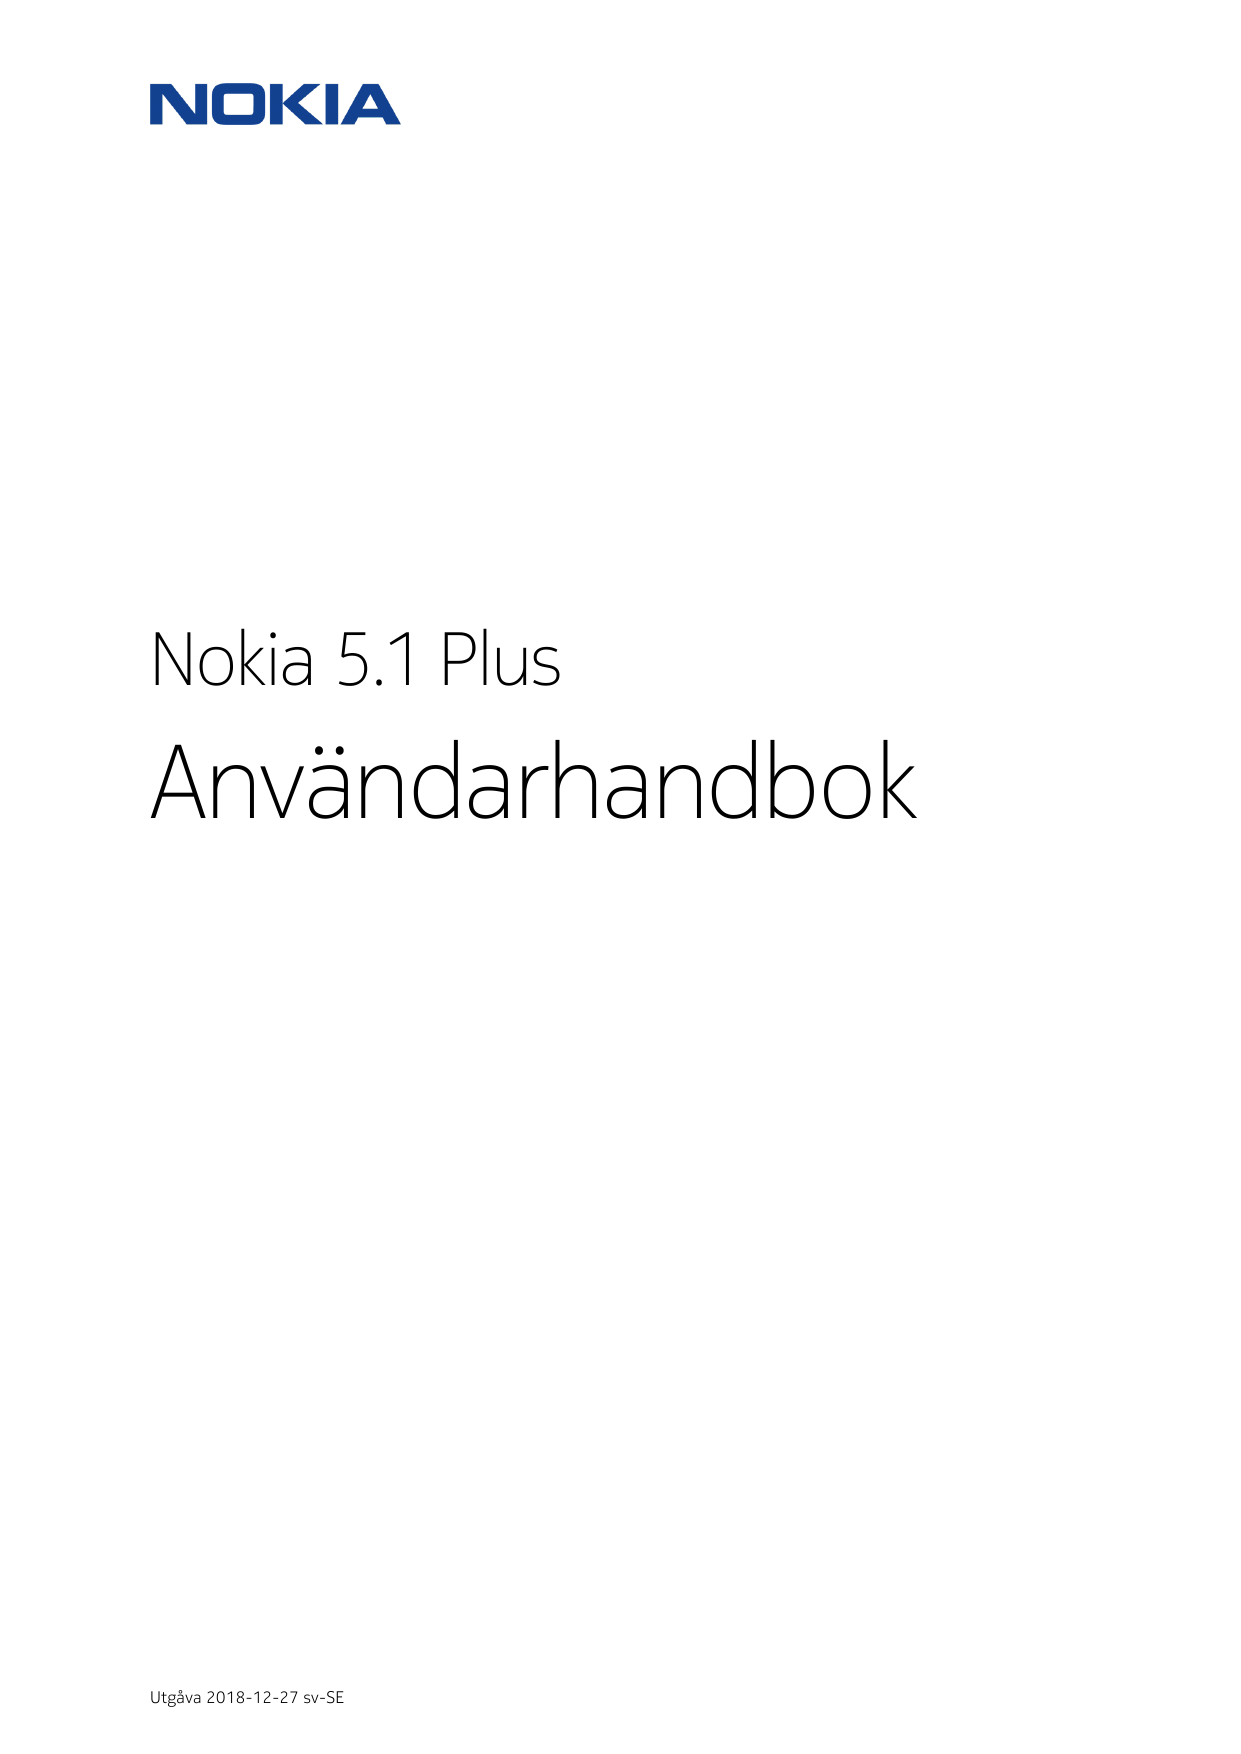 Nokia 5.1 PlusAnvändarhandbokUtgåva 2018-12-27 sv-SE